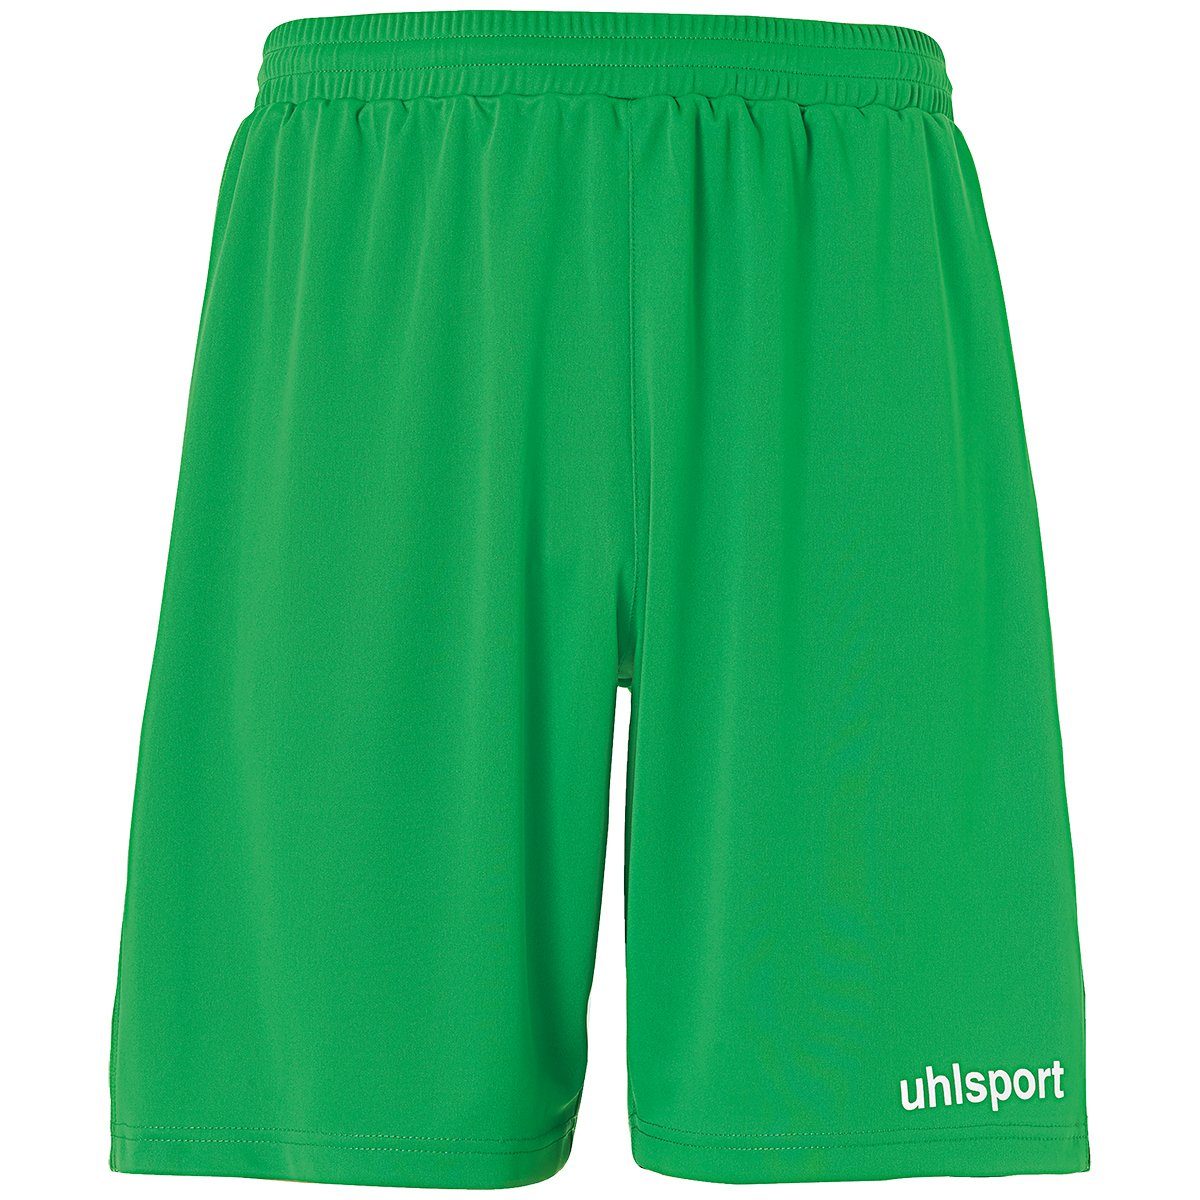 SHORTS grün/weiß uhlsport Shorts uhlsport Shorts PERFORMANCE